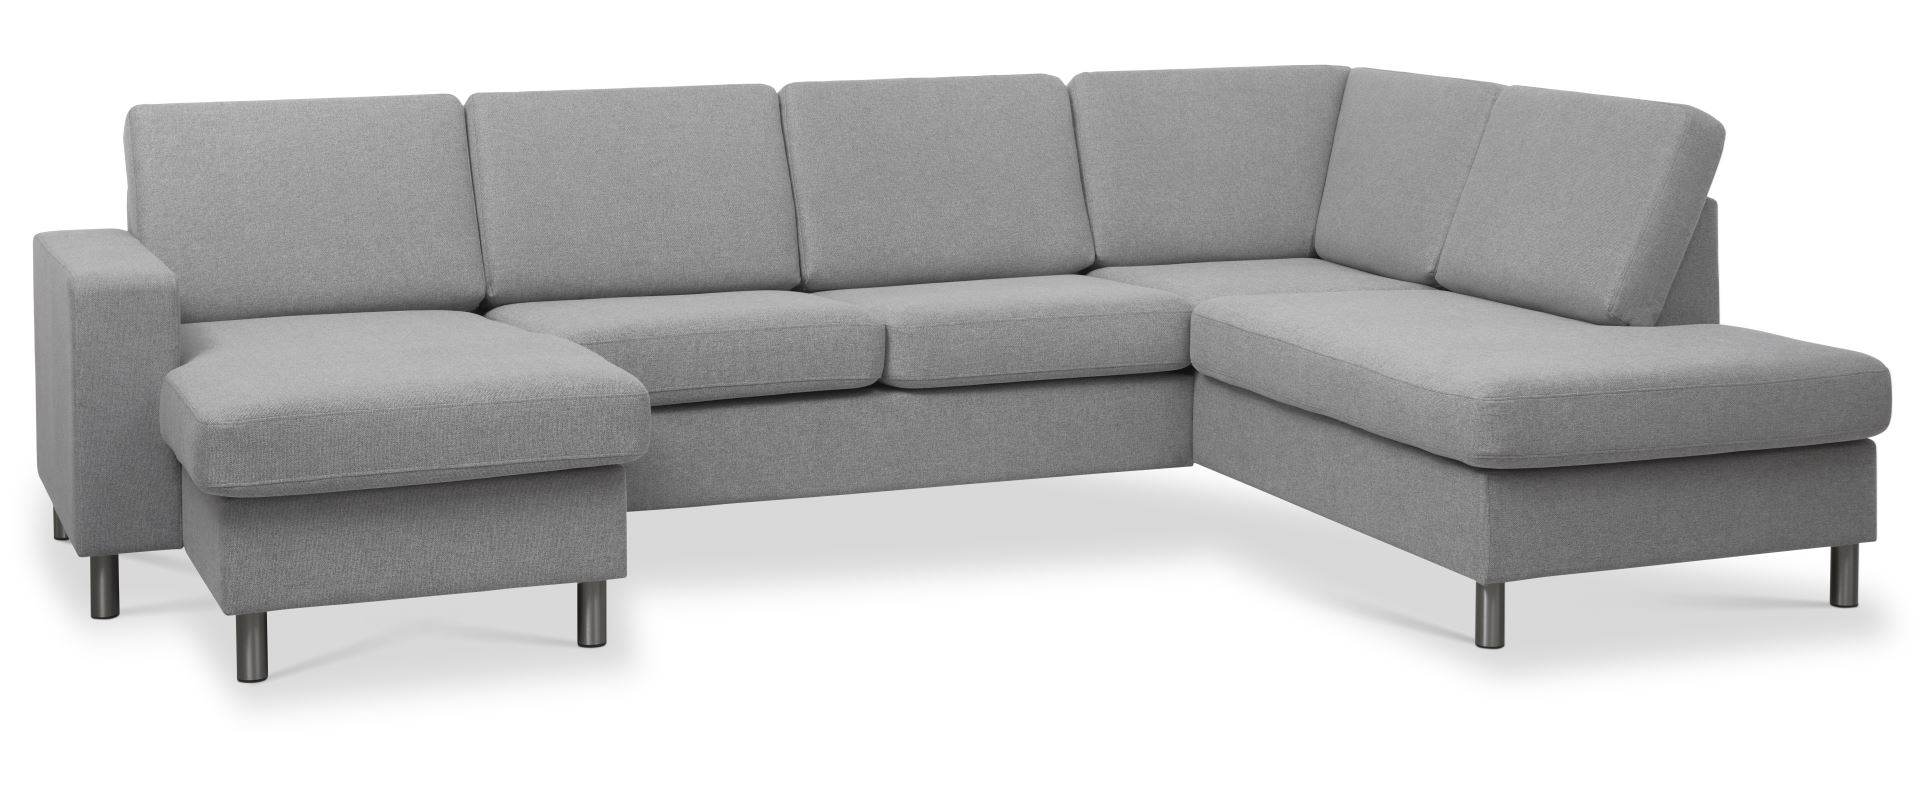 Pan set 5 U OE right sofa med chaiselong - grå polyester stof og børstet aluminium